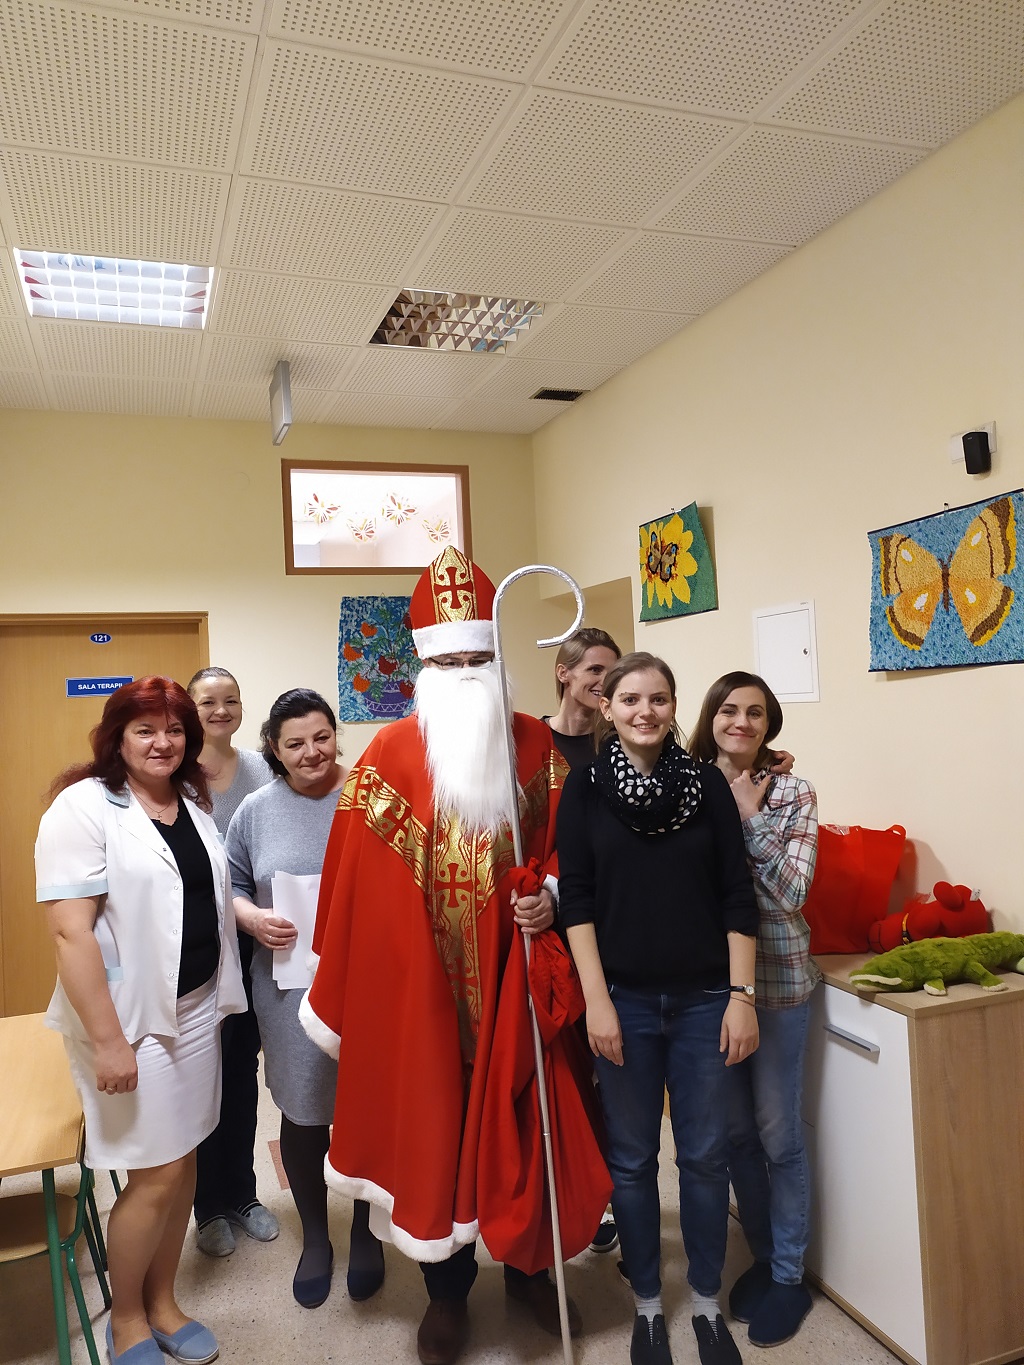 Wizyta Św. Mikołaja w Oddziale Dziennym dla Osób z Autyzmem Dziecięcym - pracownicy Szpitala